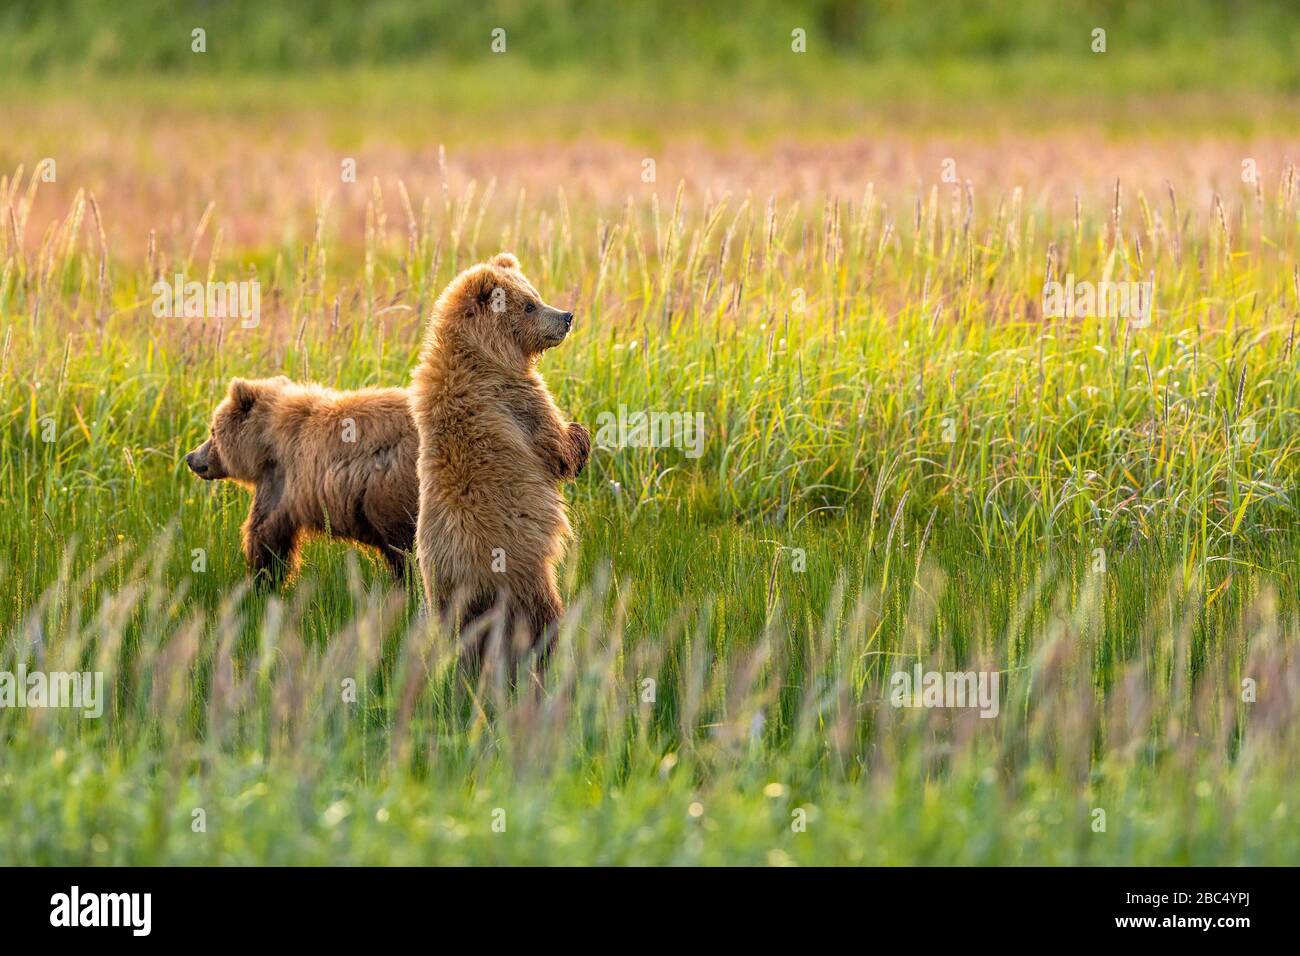 Deux jeunes oursons jouant dans un champ Banque D'Images